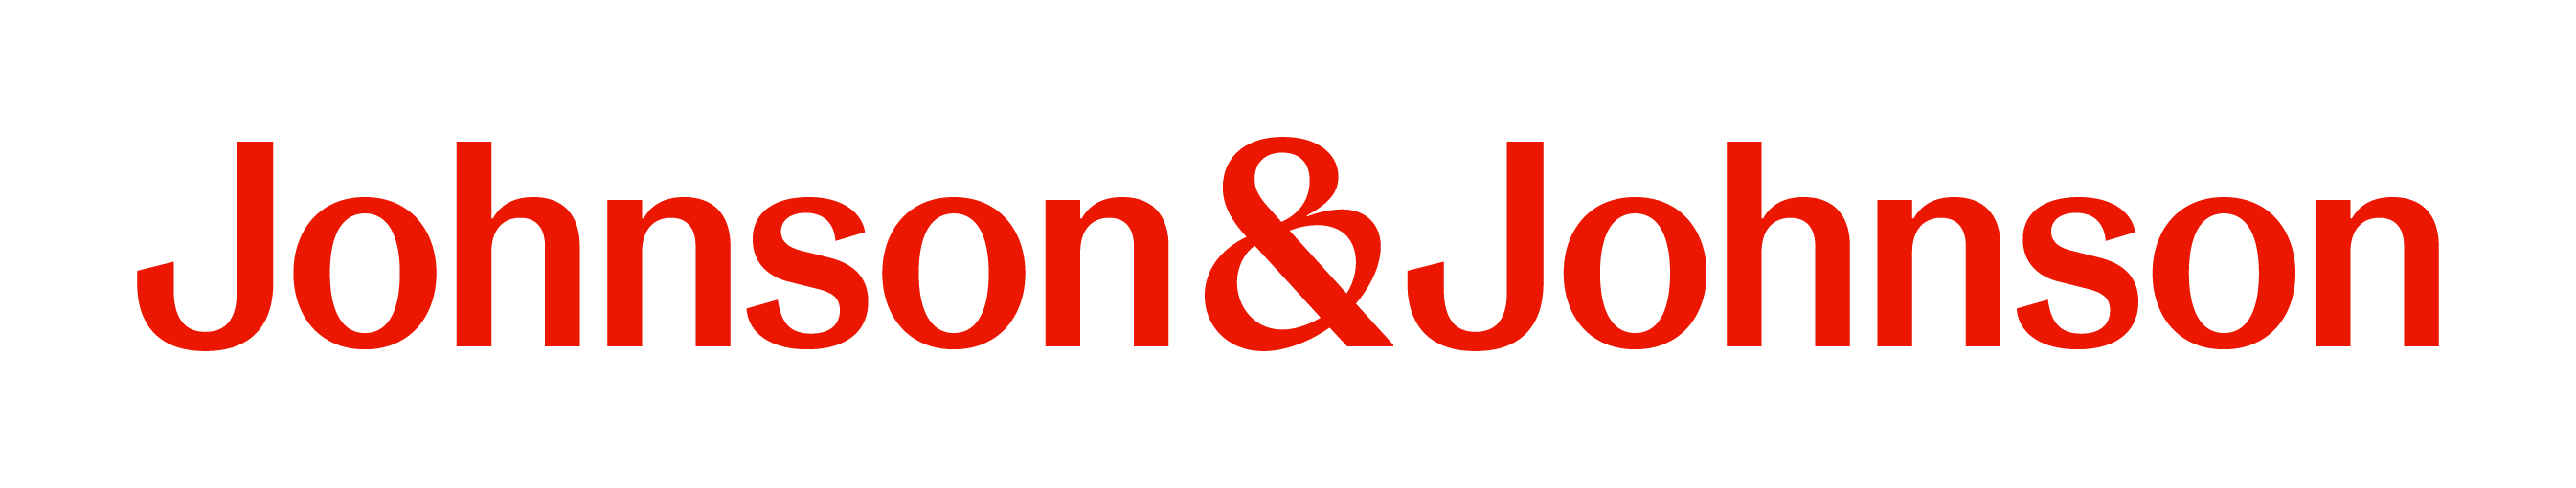 Janssen - Johnson & Johnson